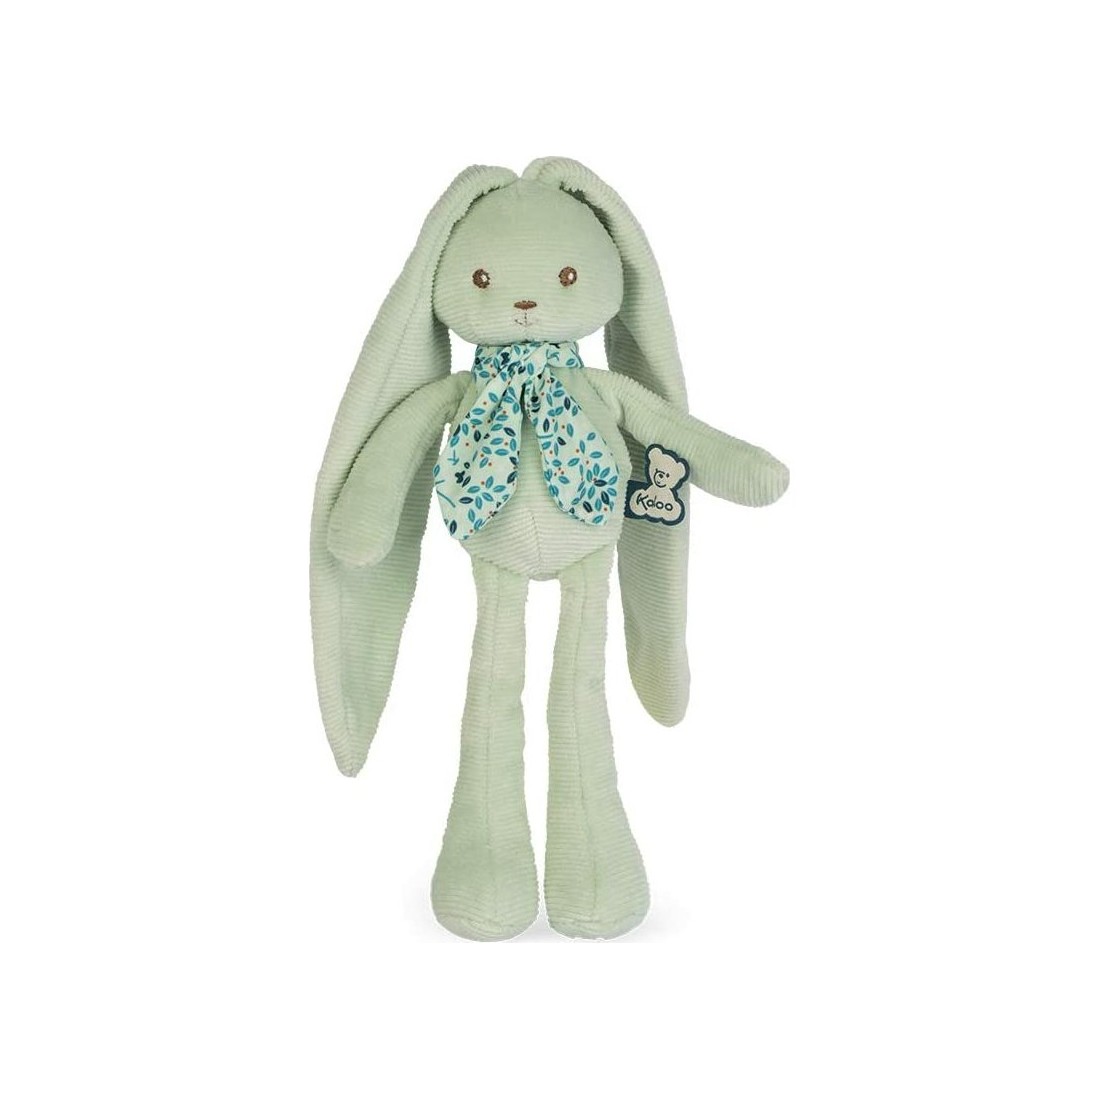 Kaloo Doudou marionnette petit lapin (K210005) au meilleur prix sur